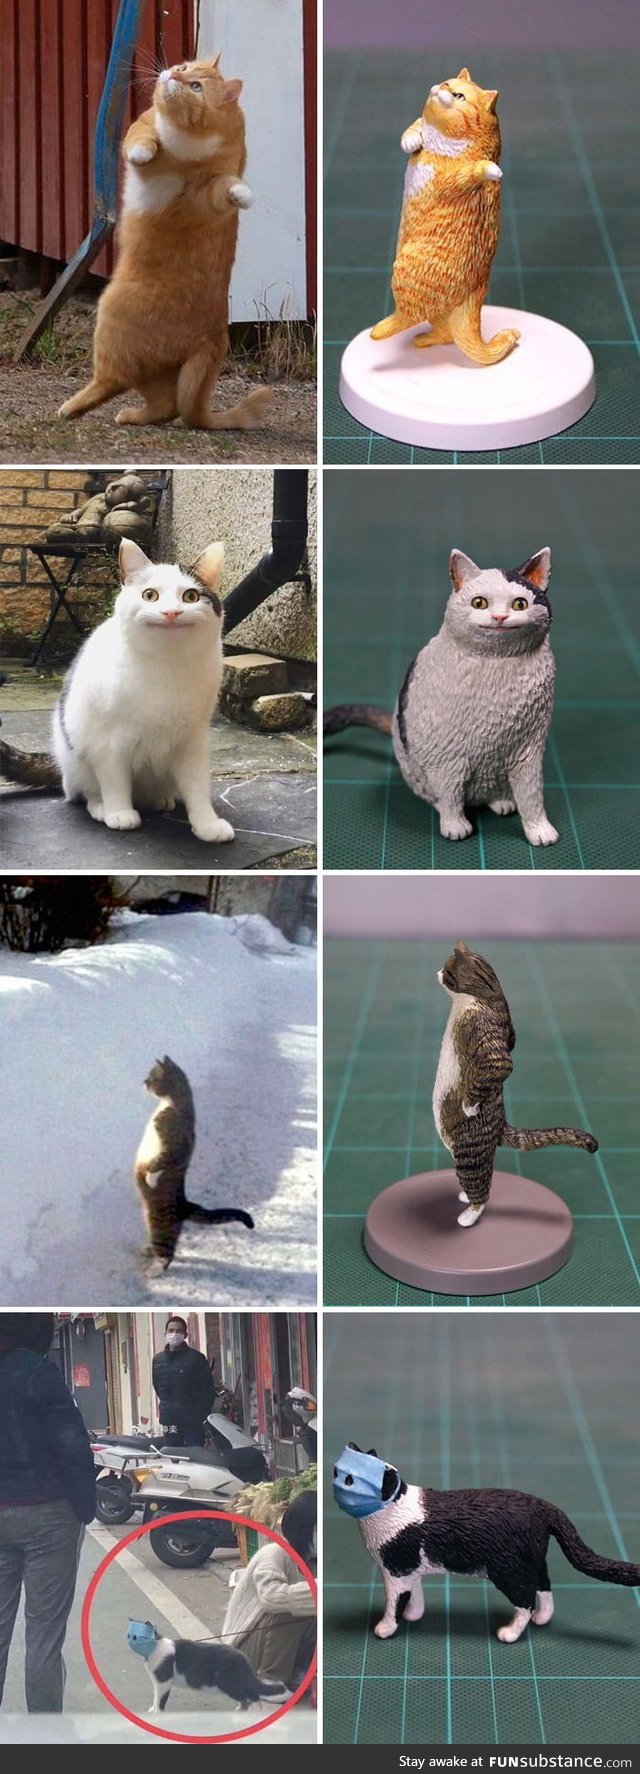 Artist Meetissai recreate funny cat photos as sculptures